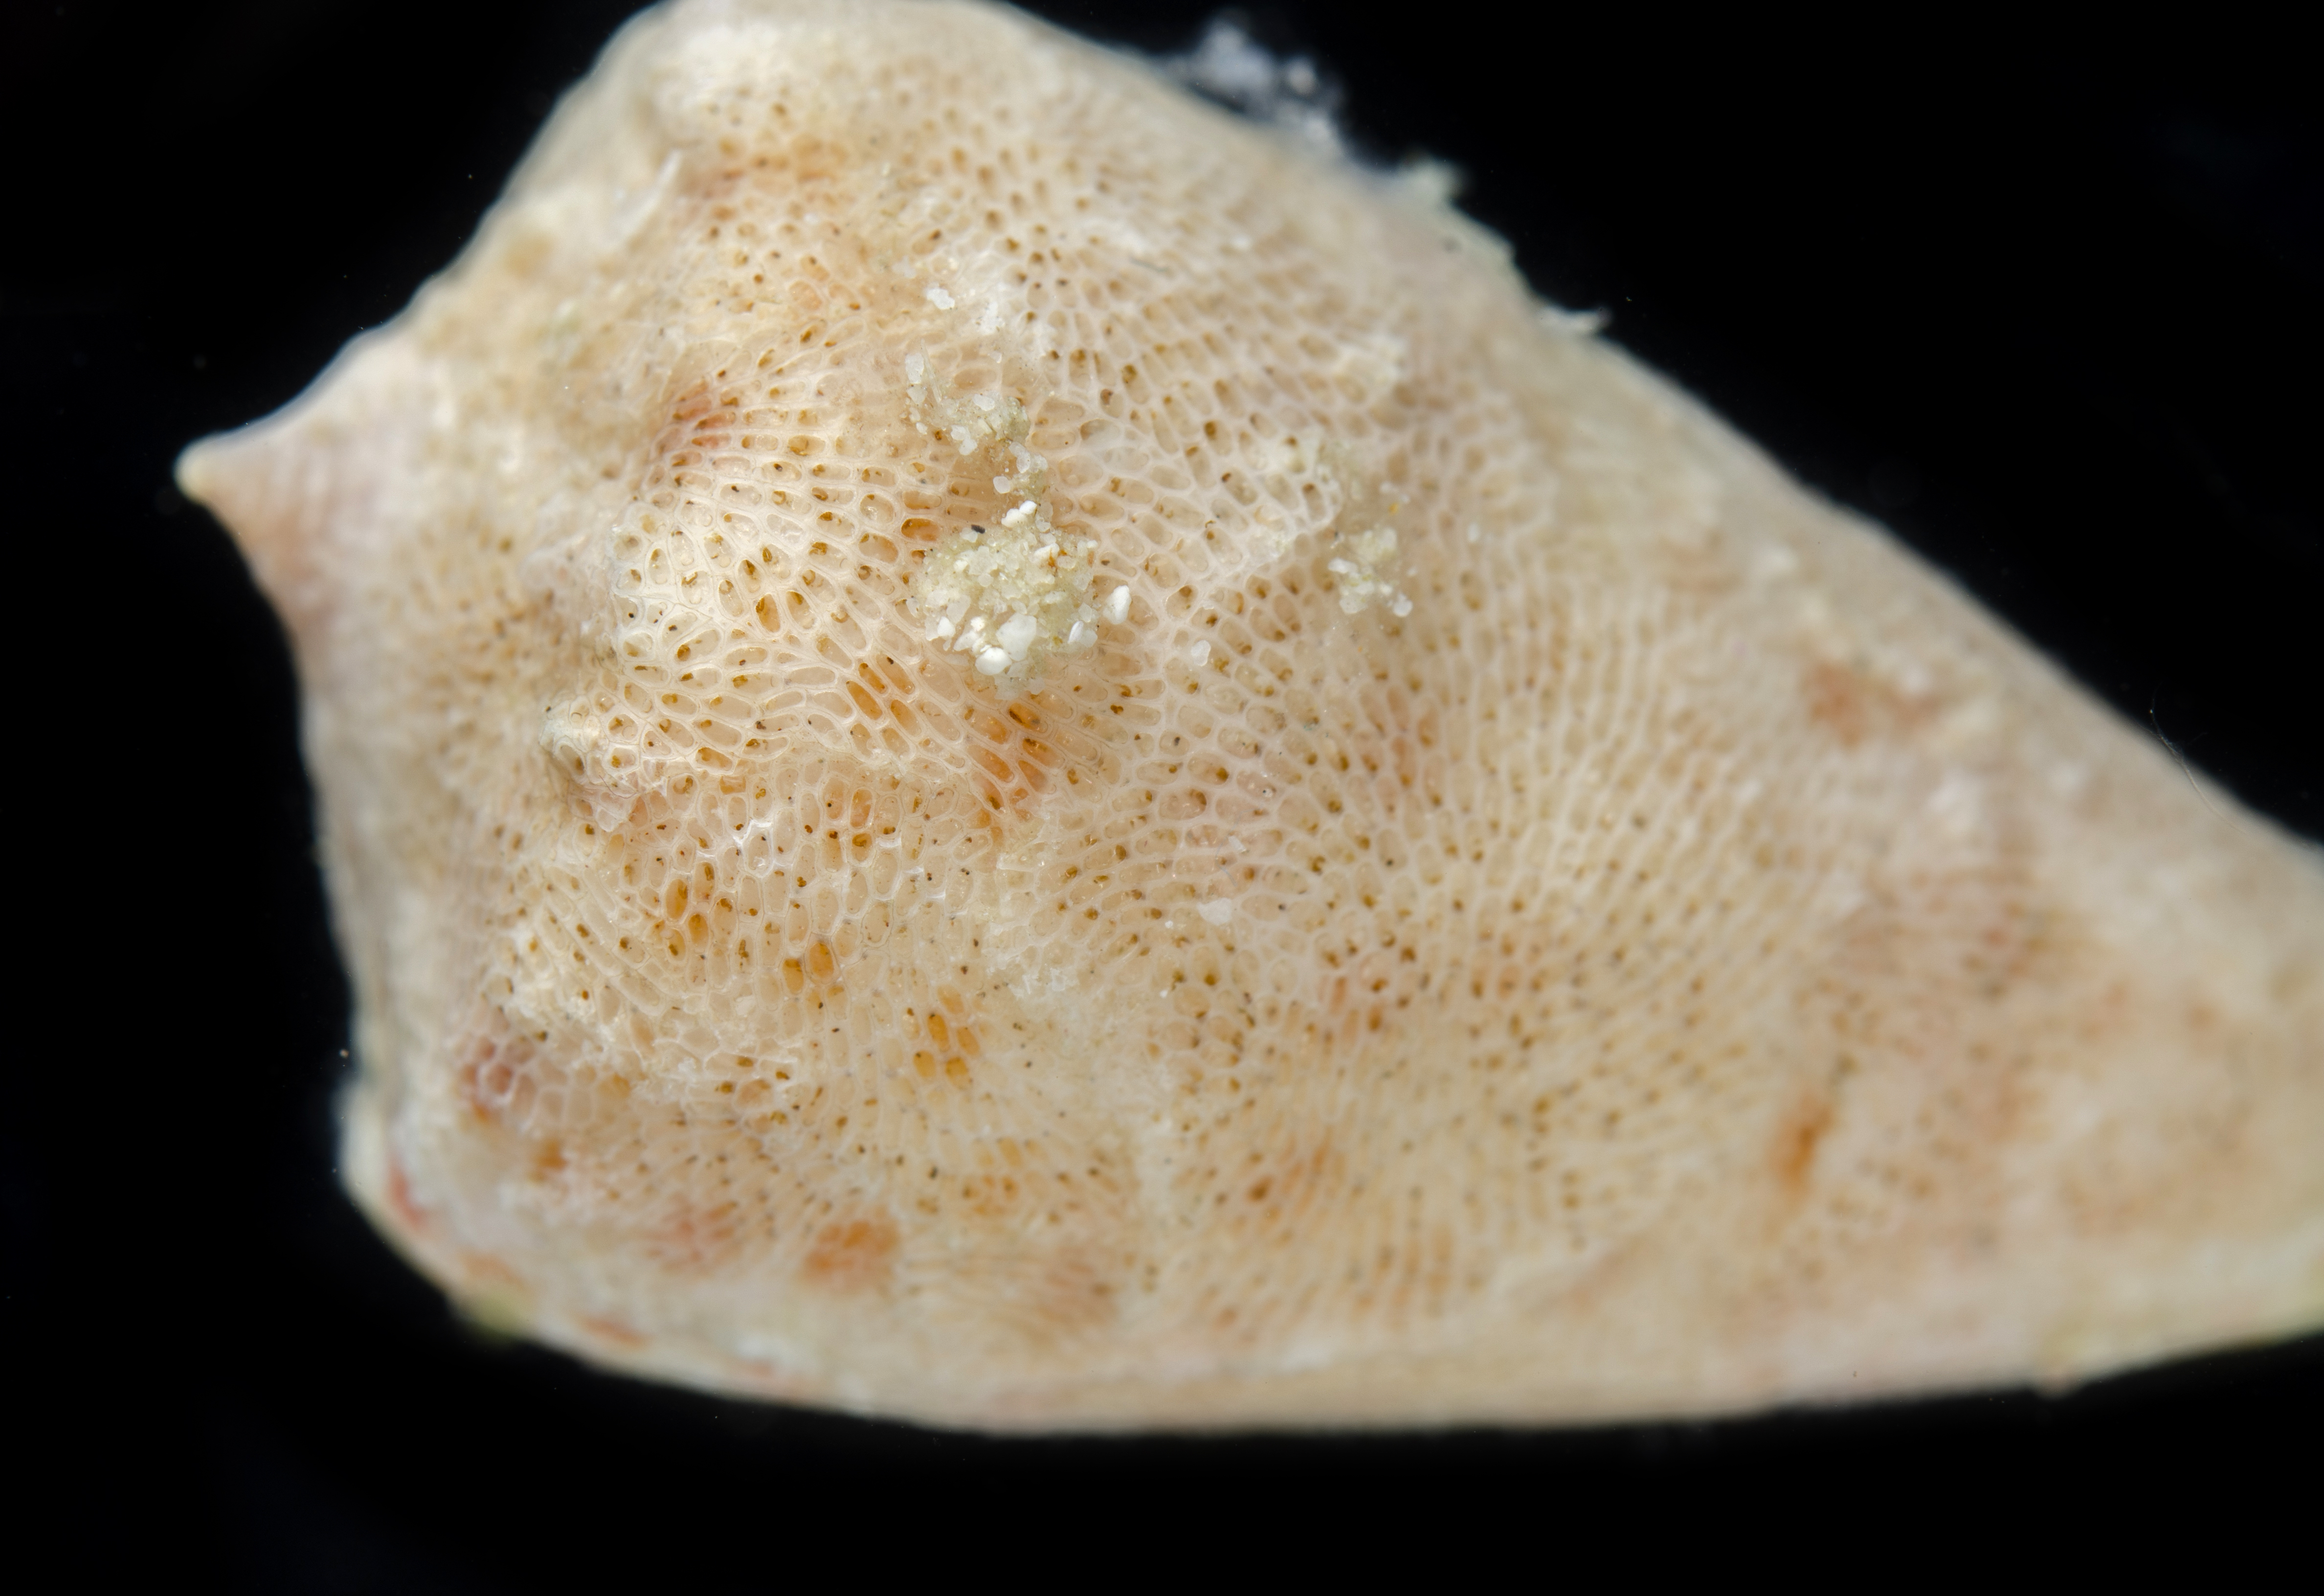 Conus tessulatus image